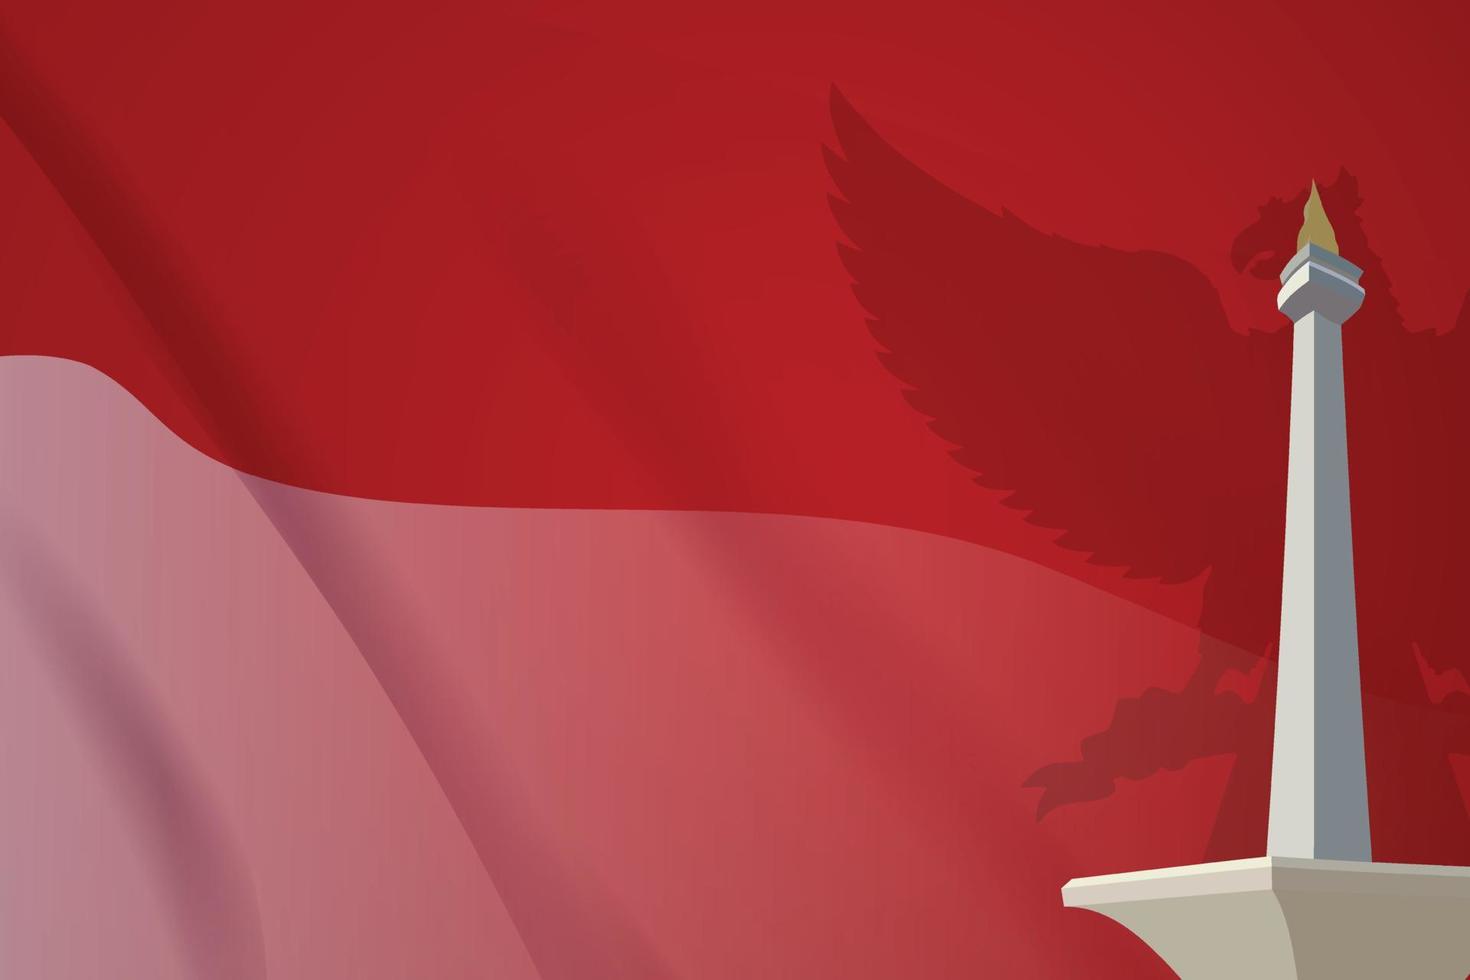 indonesische rote und weiße flagge, die hintergrundart flattert, mit realistischem monas-markstein 3d der verzierung und garuda-vogel vektor